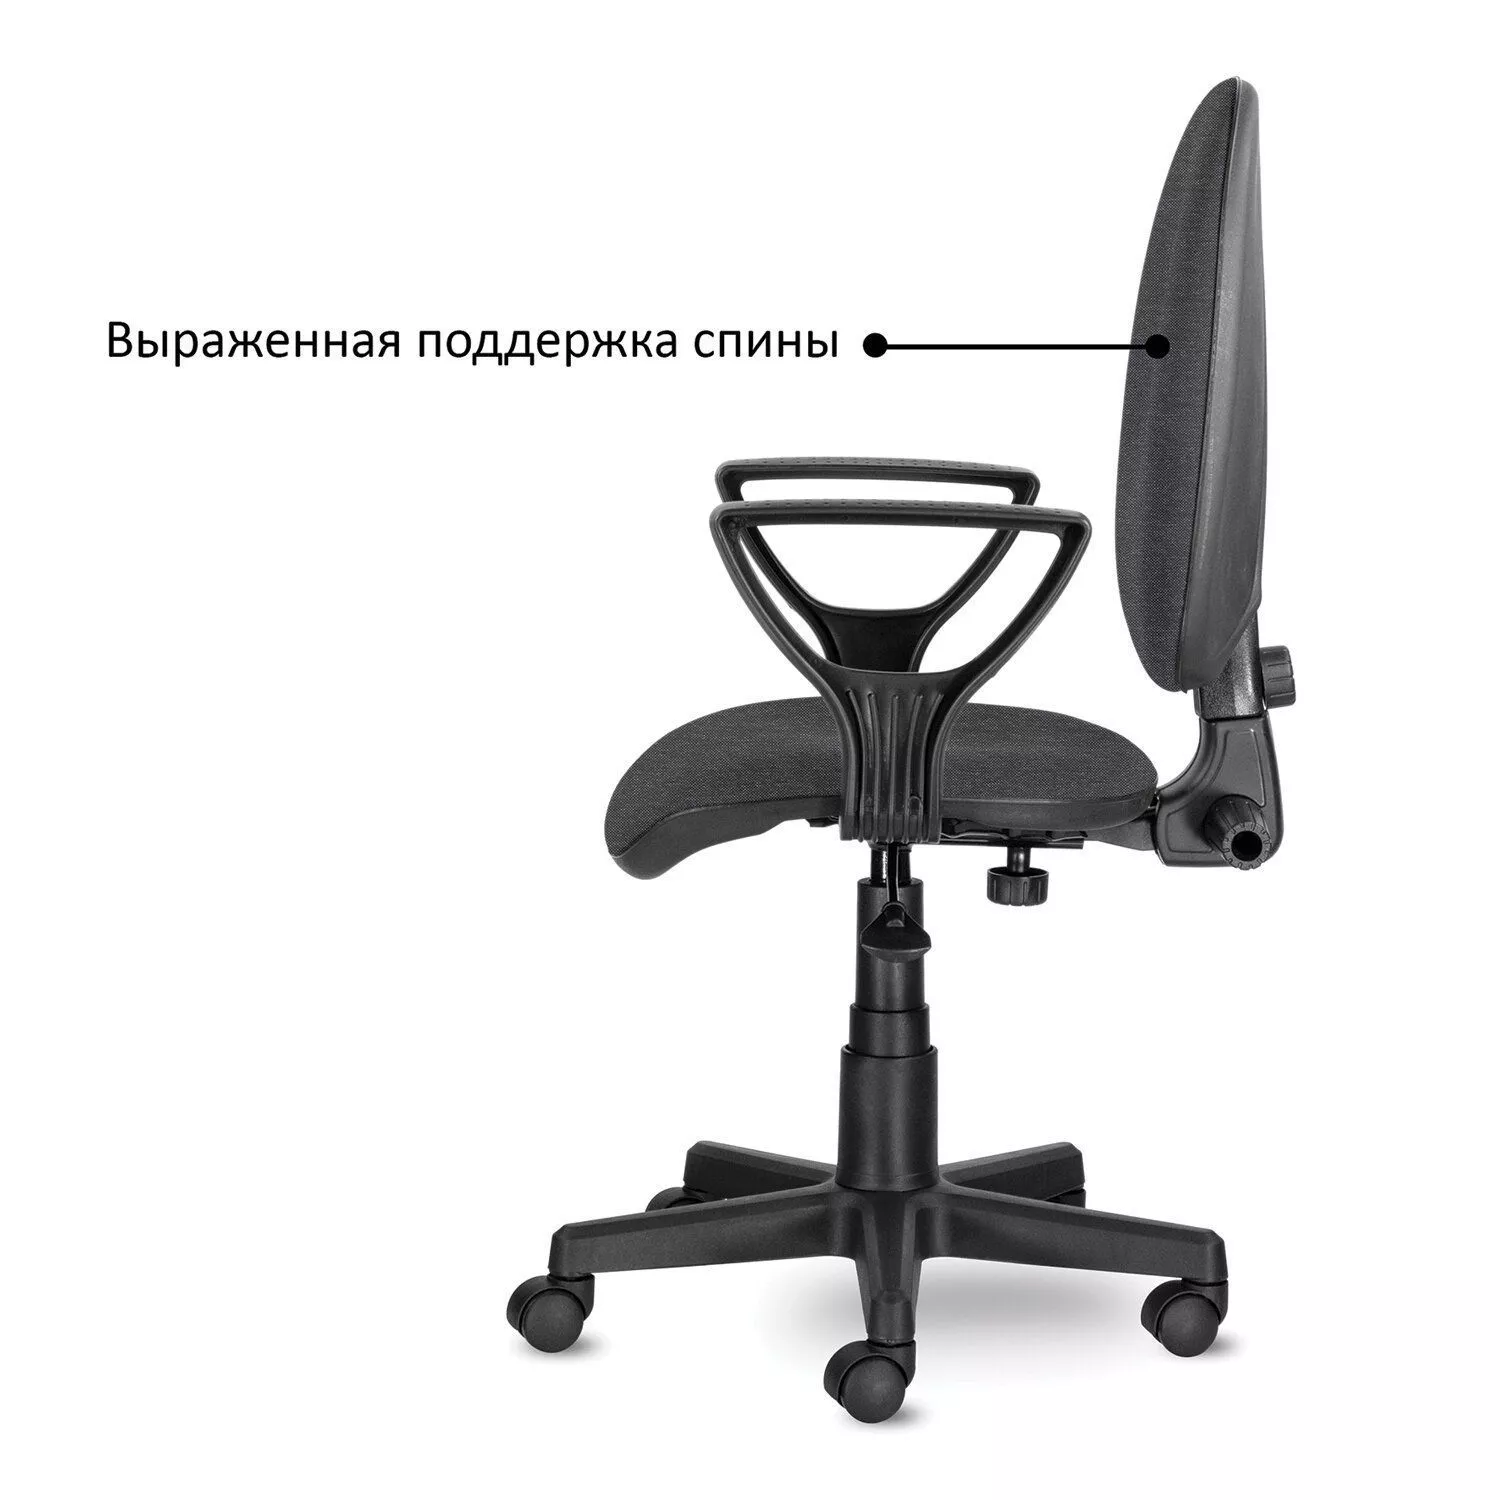 Кресло офисное BRABIX Prestige Ergo MG-311 Серый 531874